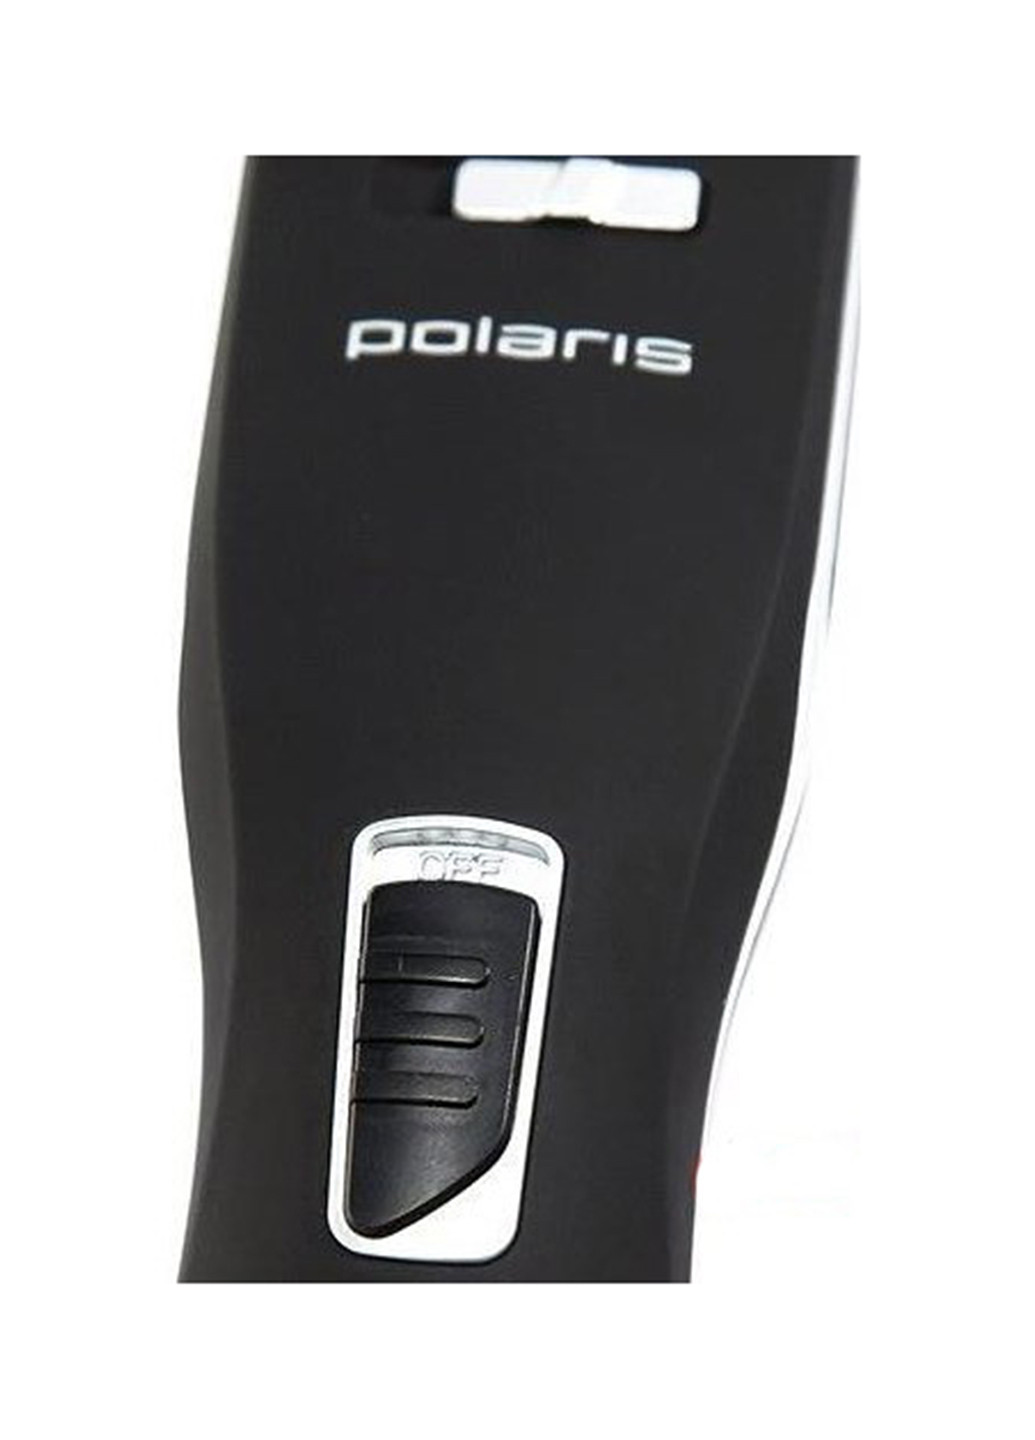 Машинка для стрижки Polaris phc 2102rc (149770329)